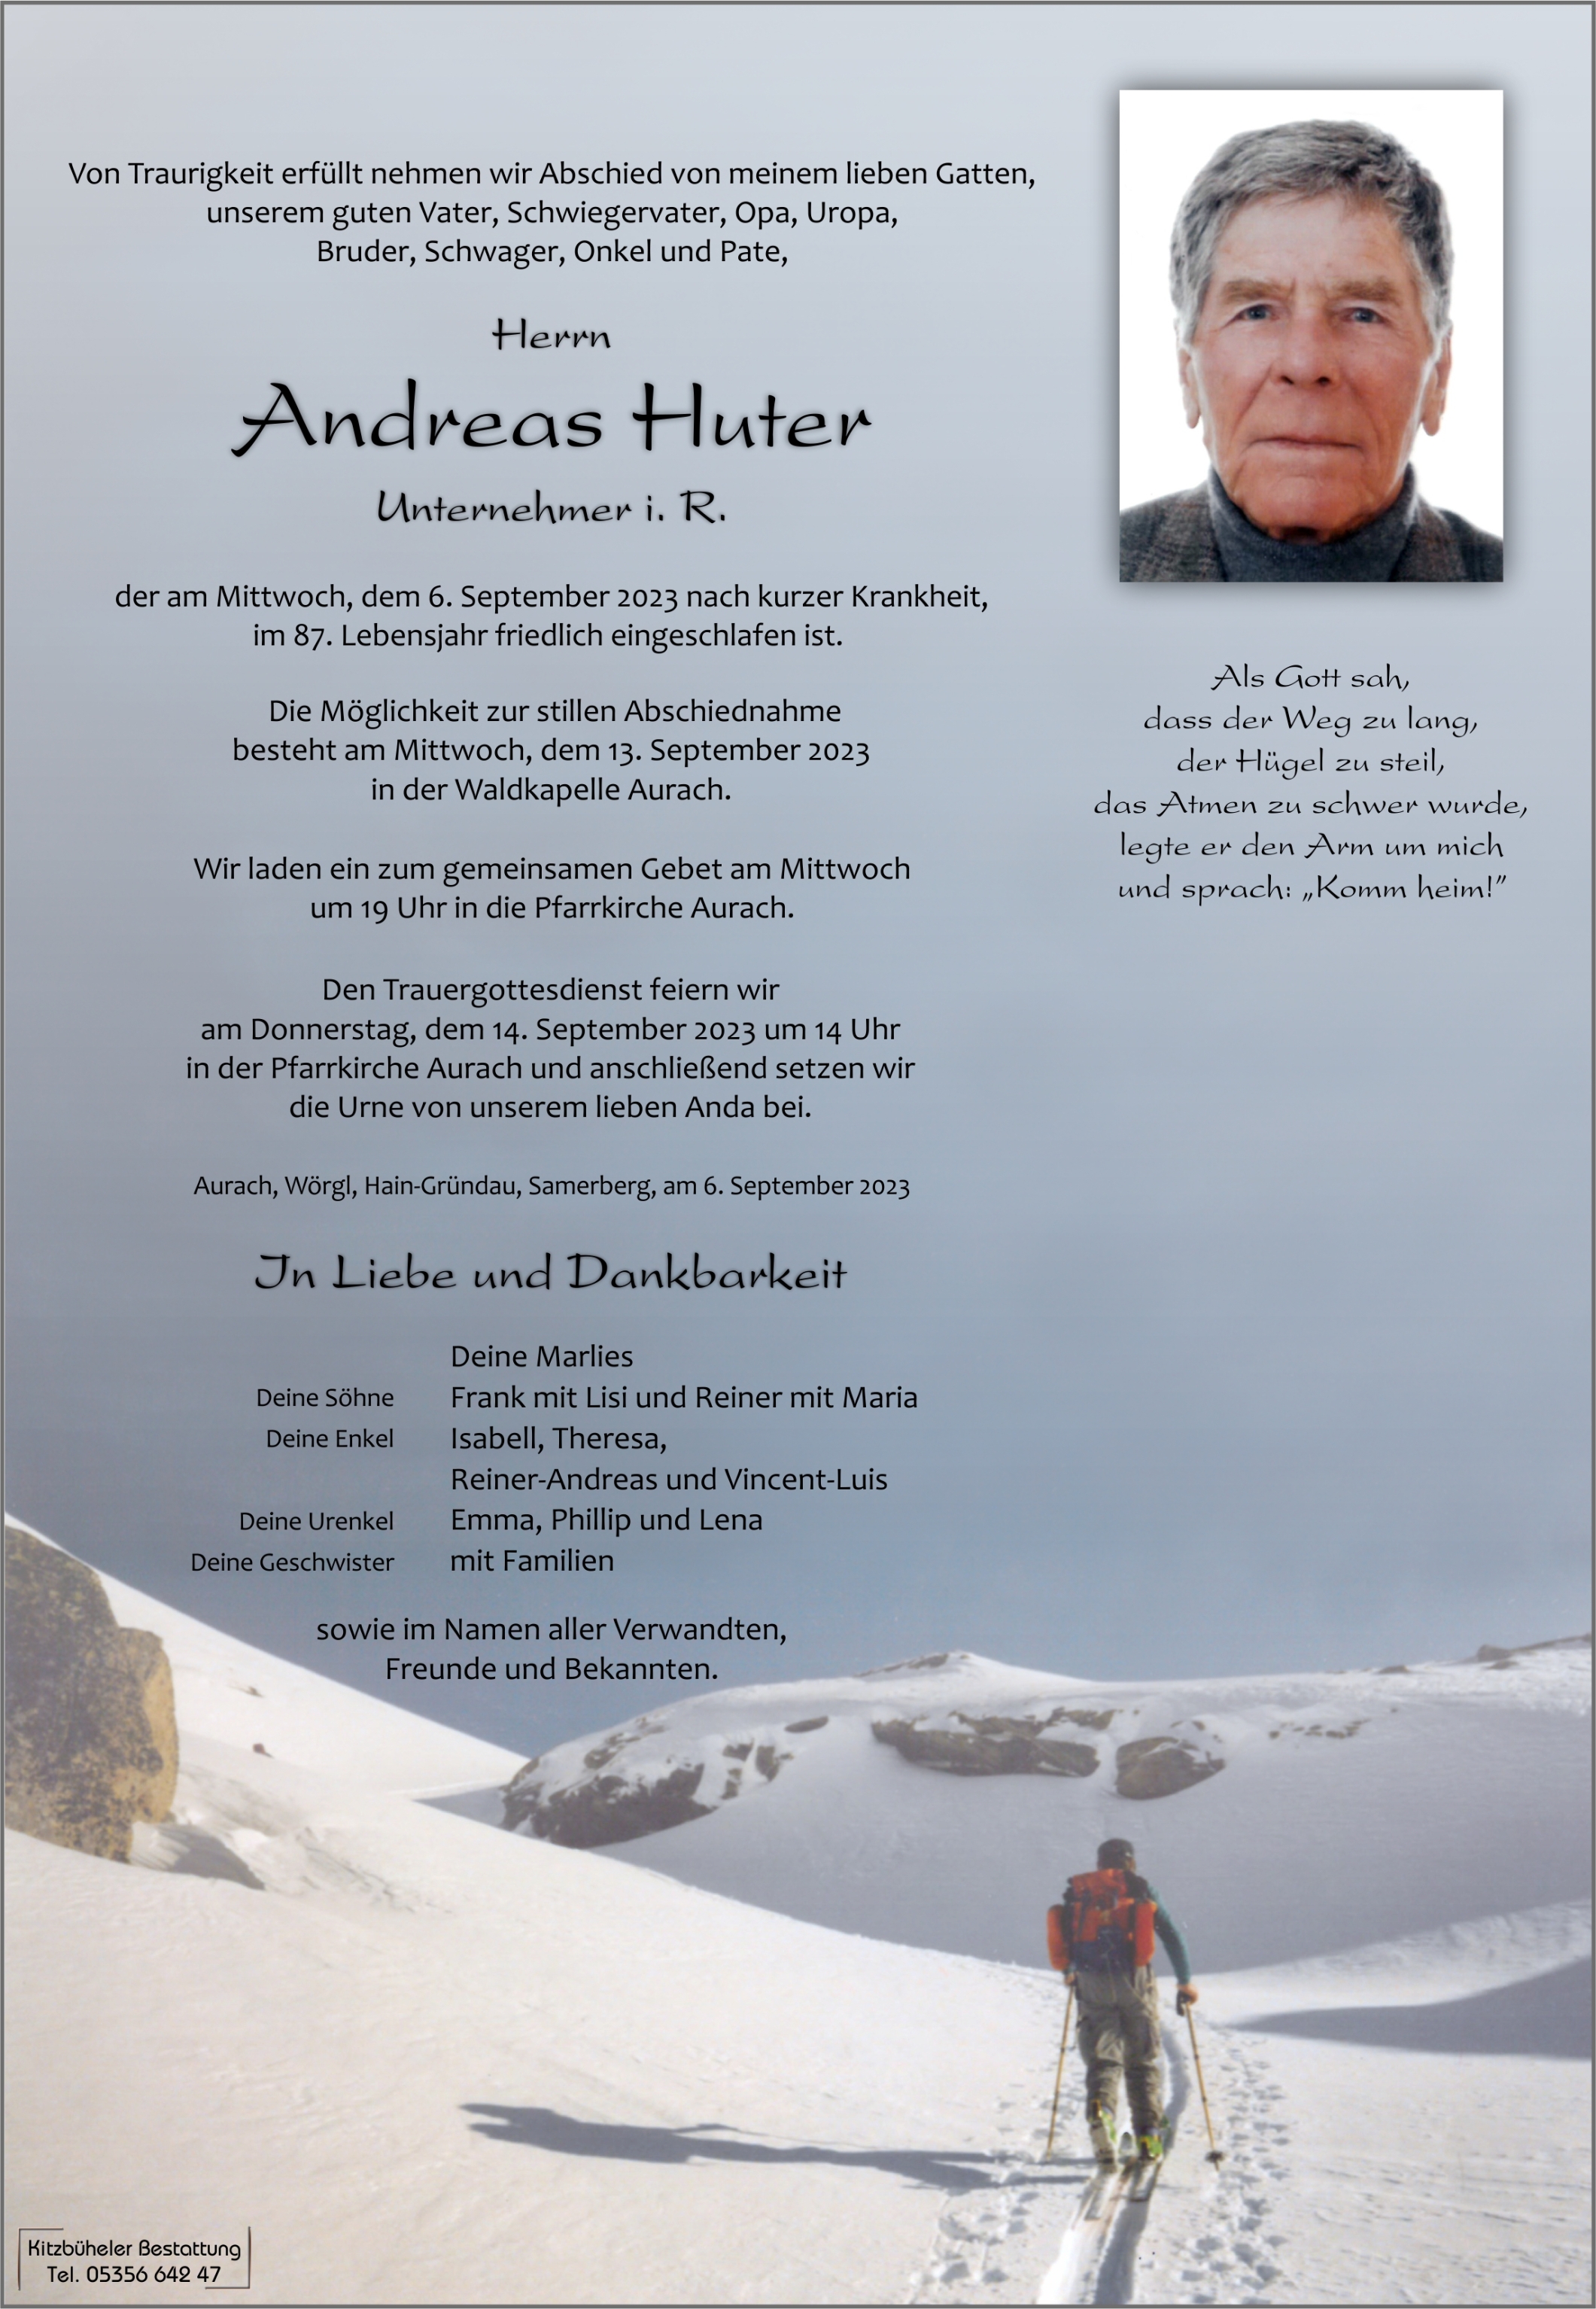 Andreas Huter